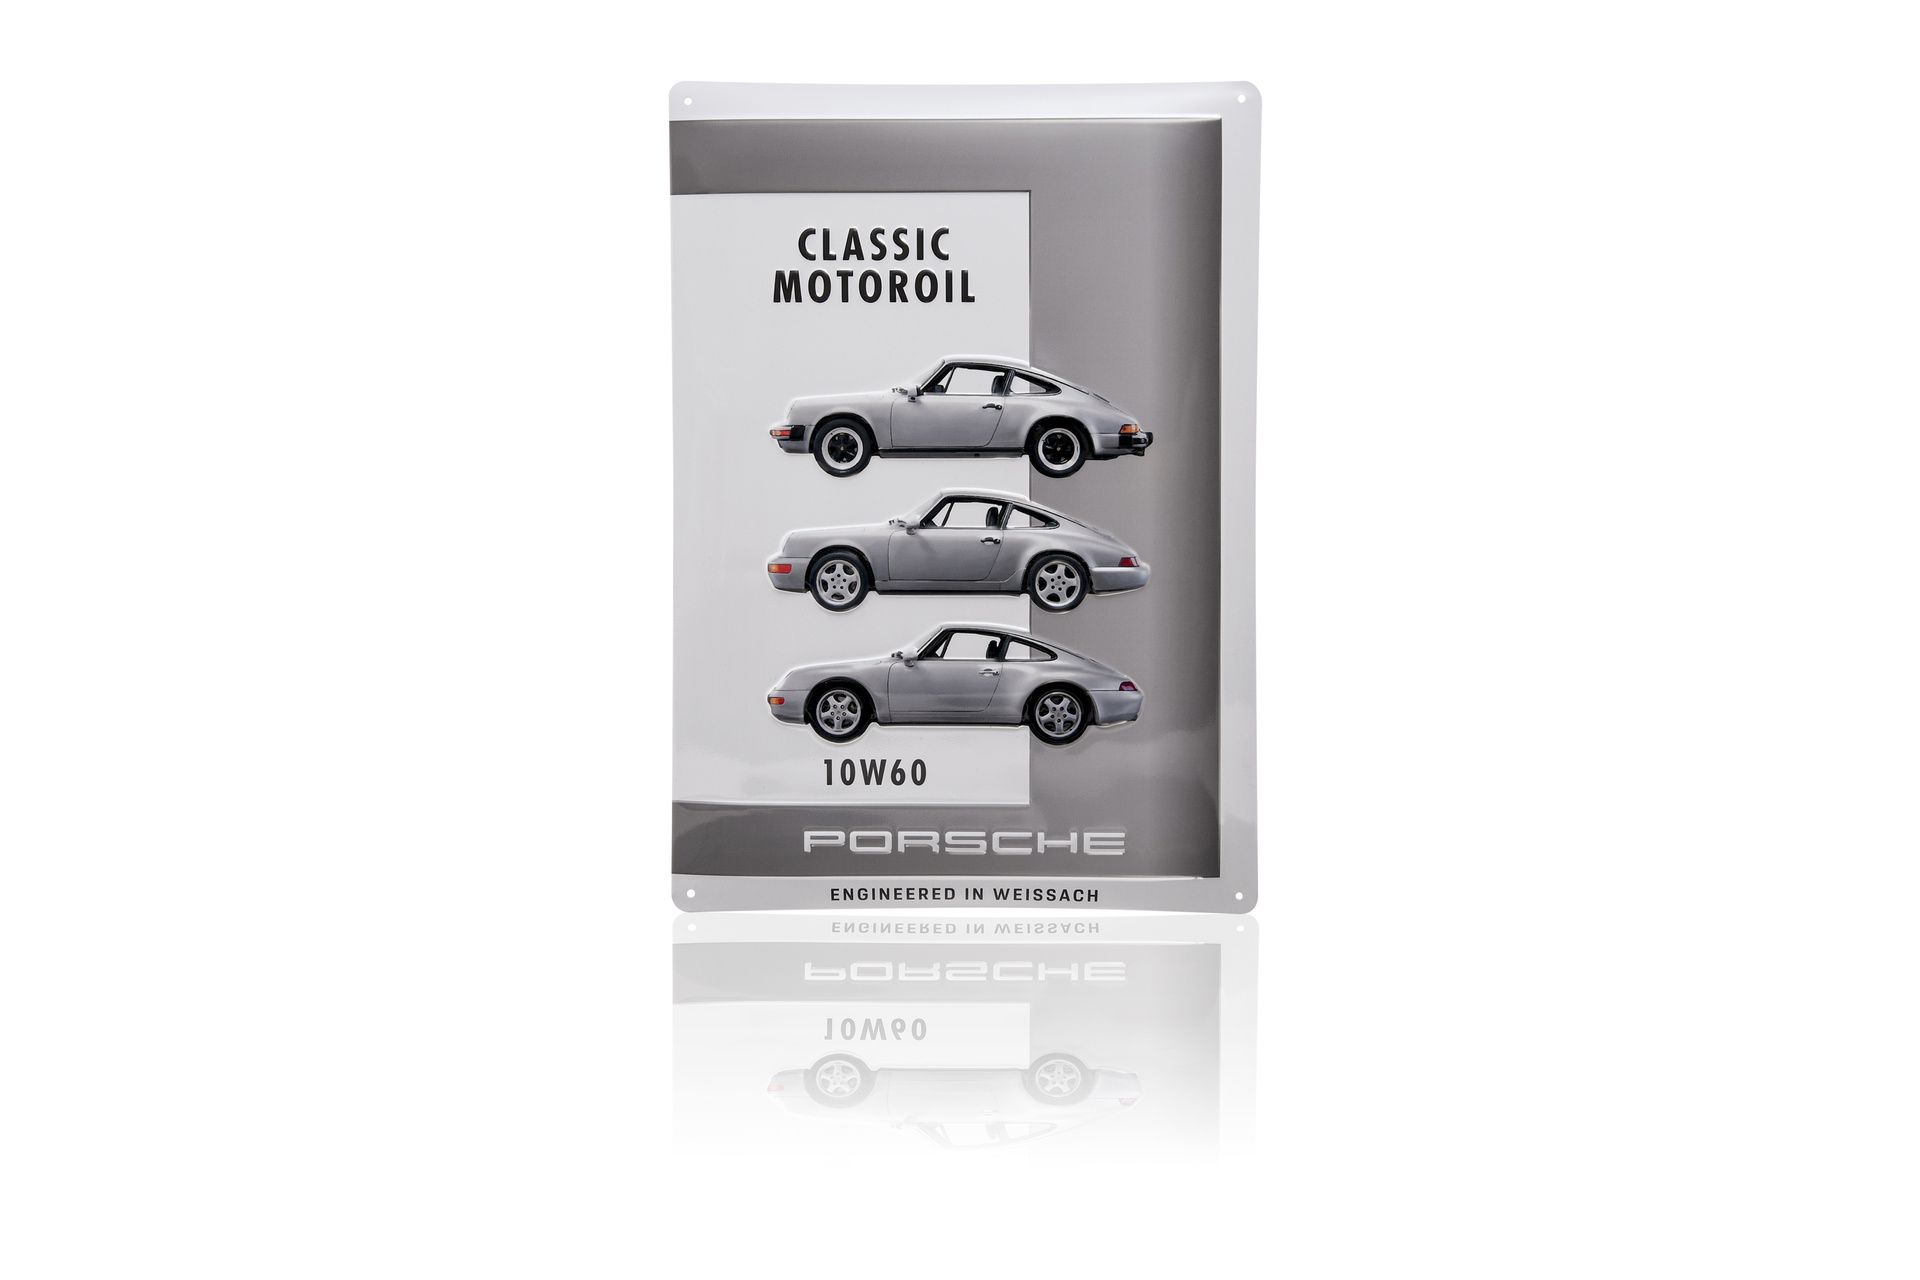 Porsche PCG04301060 - Plaque décorative Porsche Classic Motoroil 10W60